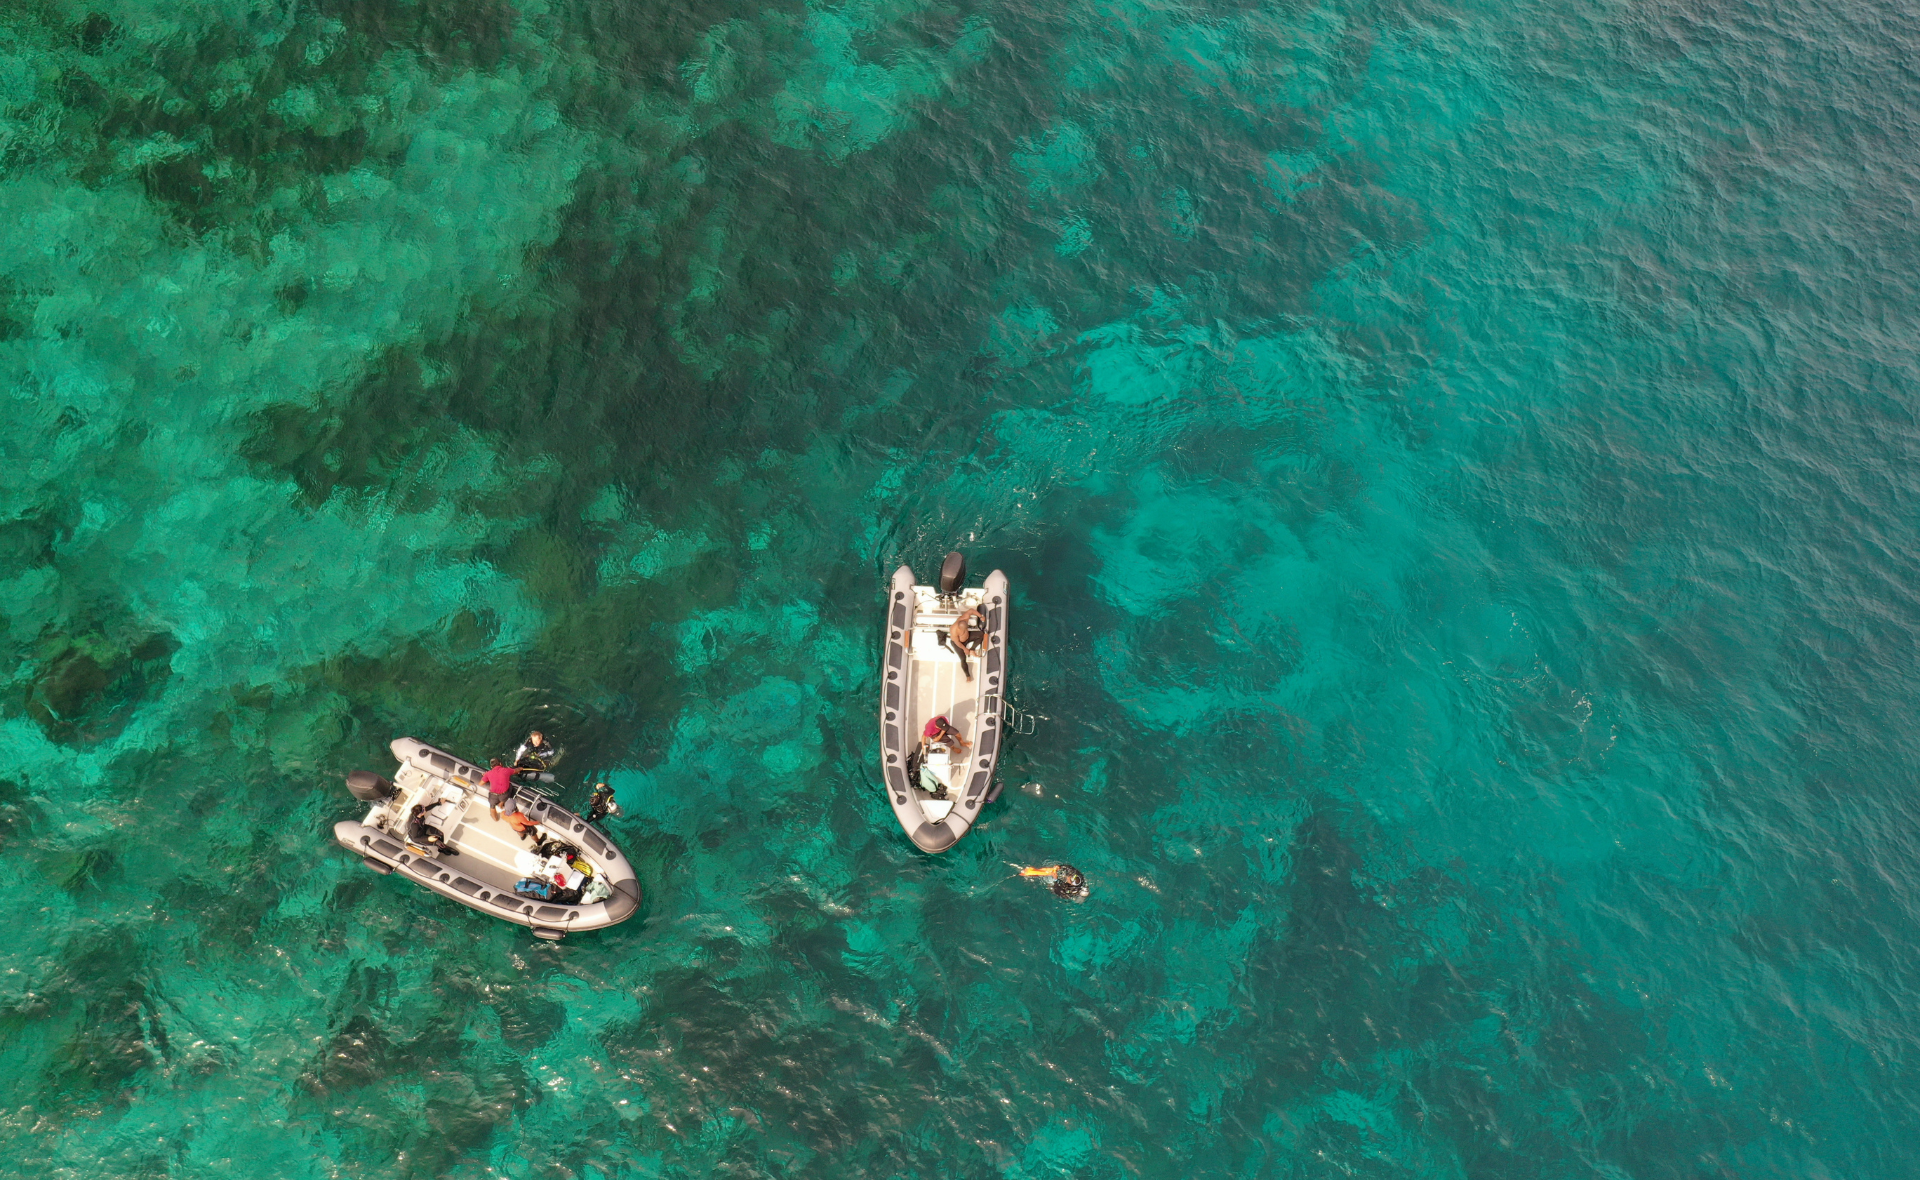 Une image vue d'en haut de deux bateaux gonflables flottant sur une eau turquoise claire à Raja Ampat, en Indonésie. Les bateaux contiennent deux et trois personnes chacun et il y a trois plongeurs nageant près d'eux.